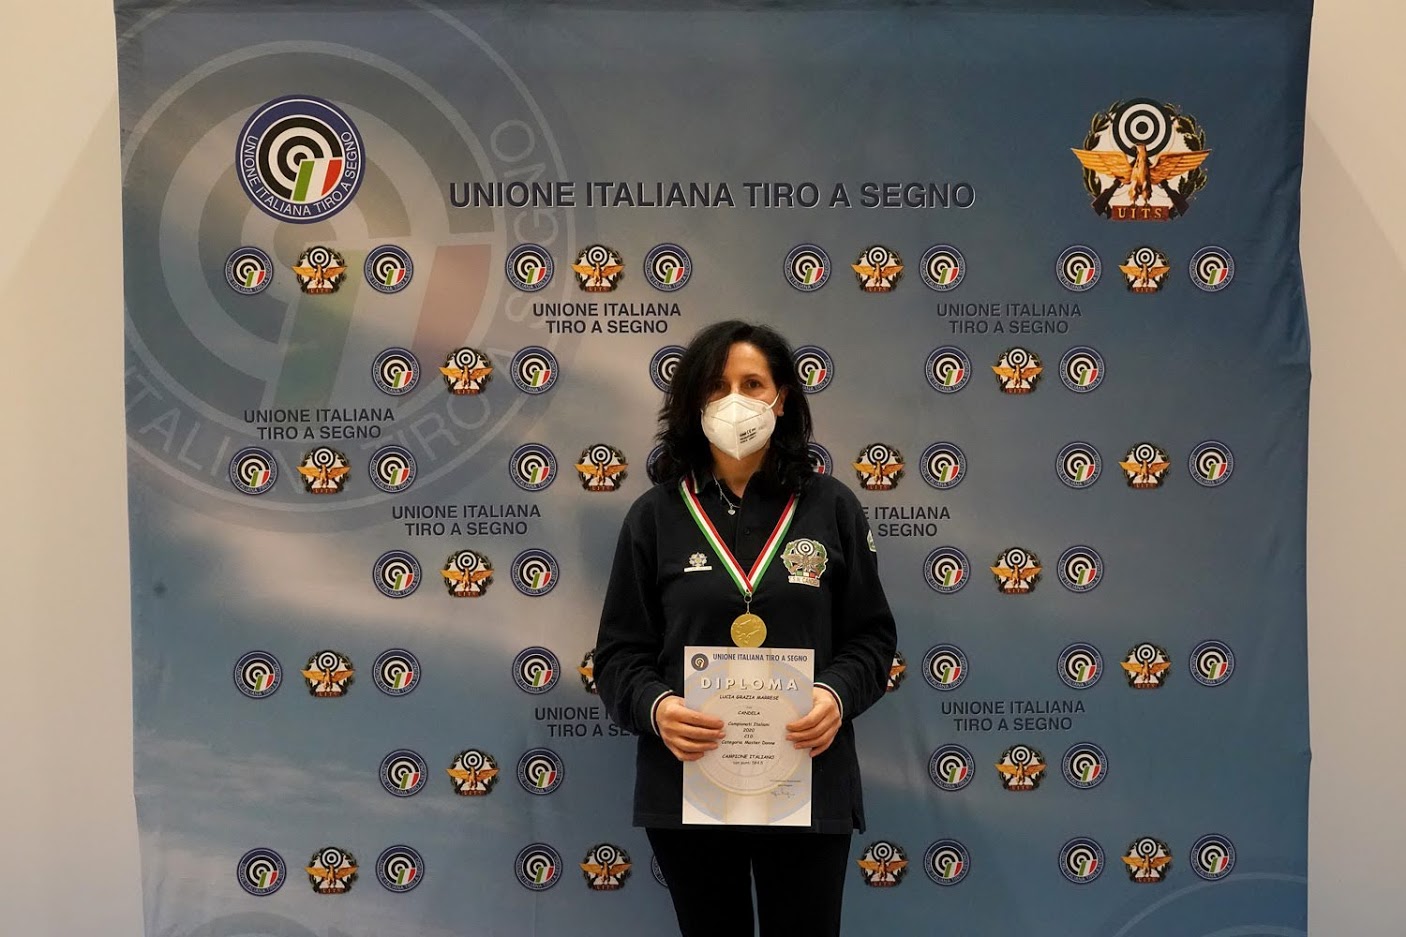 Finali dei Campionati Italiani Senior 2020 di Tiro a Segno. Candela ancora a podio.